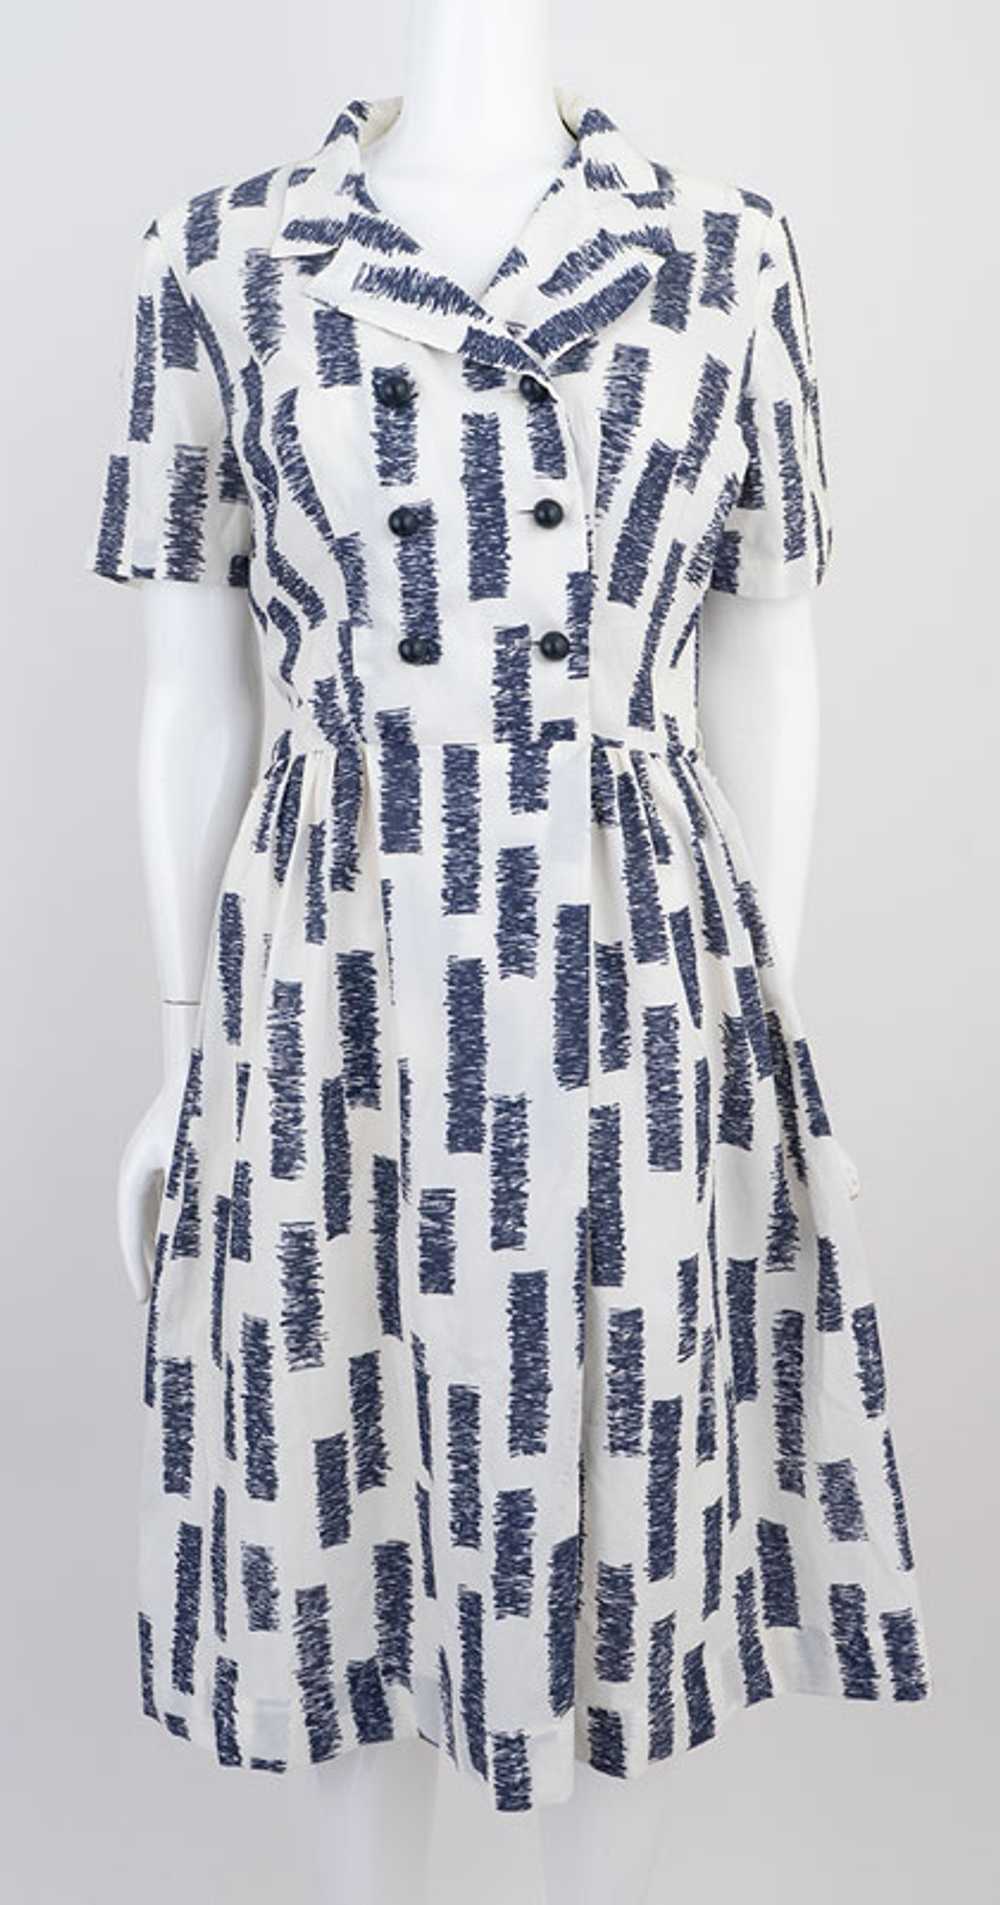 Mod Print 1960s Dress - image 2